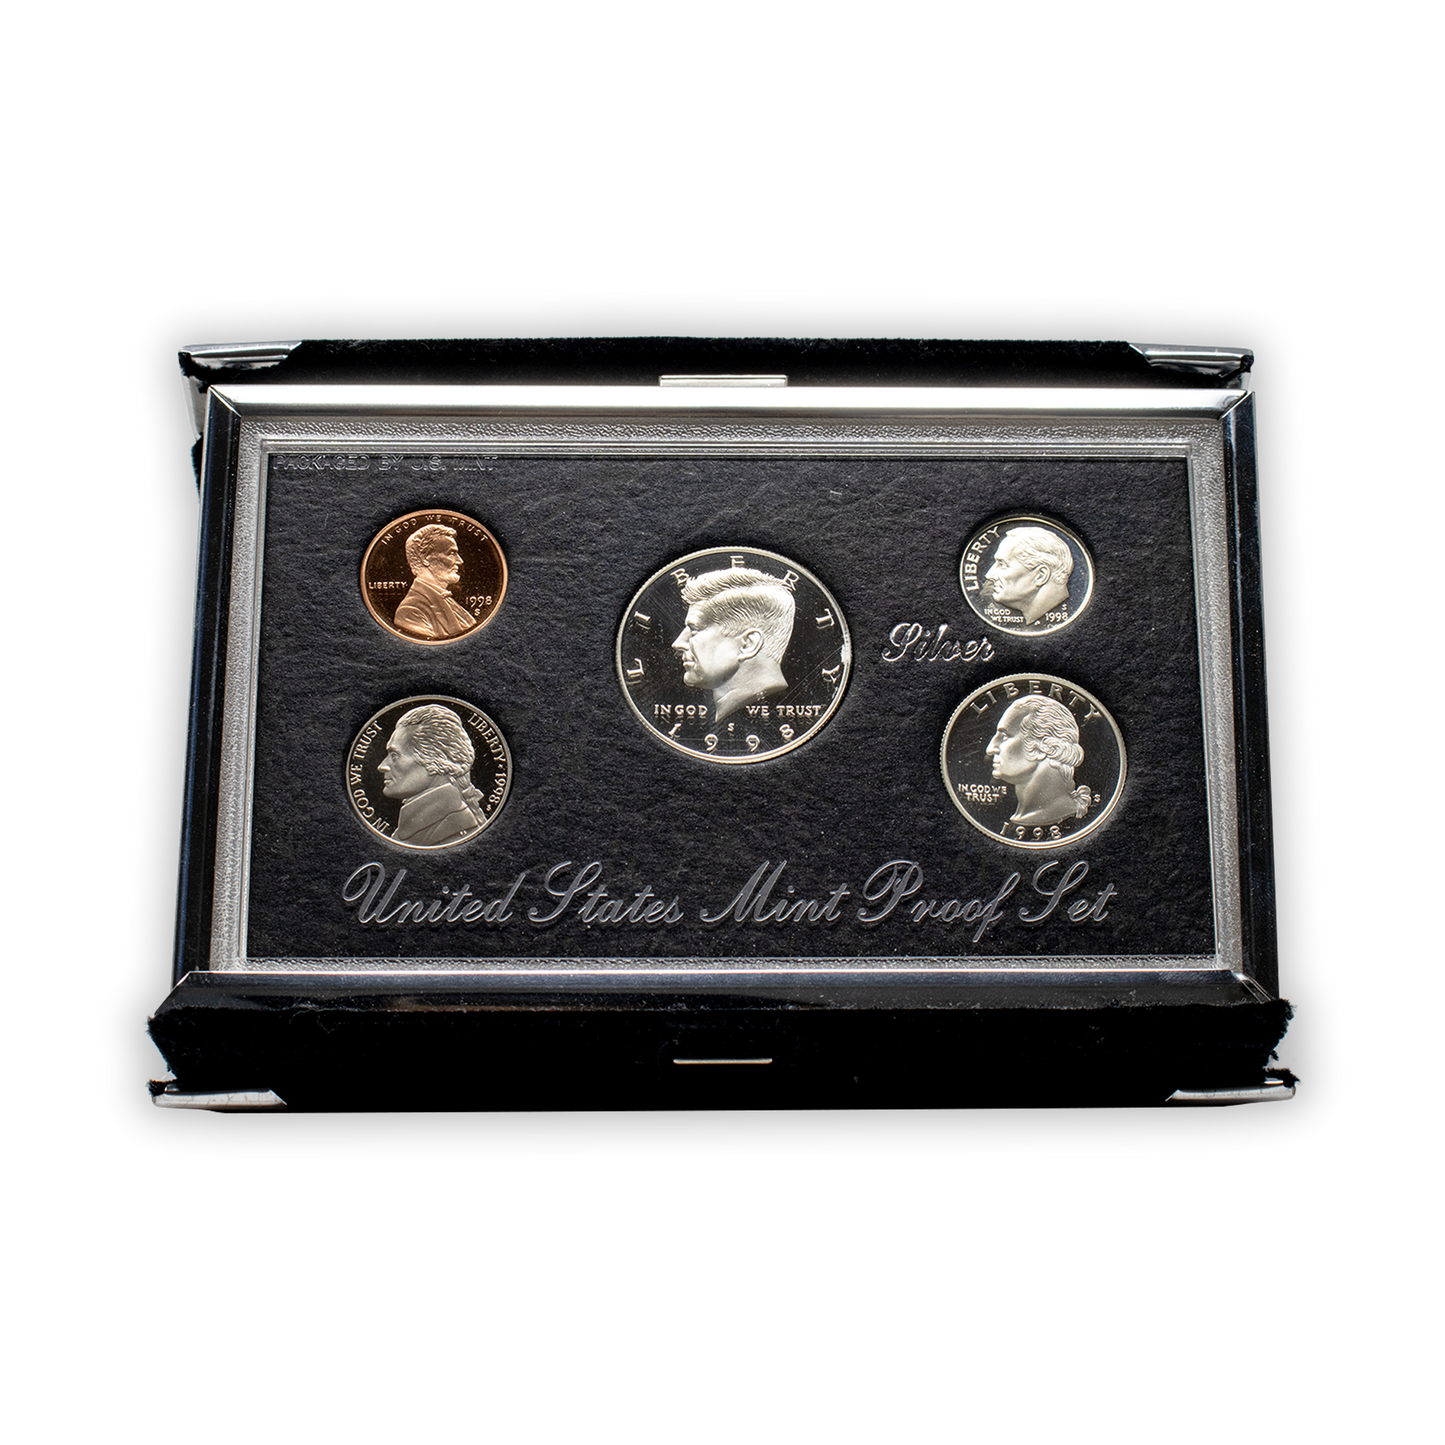 1998 Premier Silver Proof Set - 5 Coins